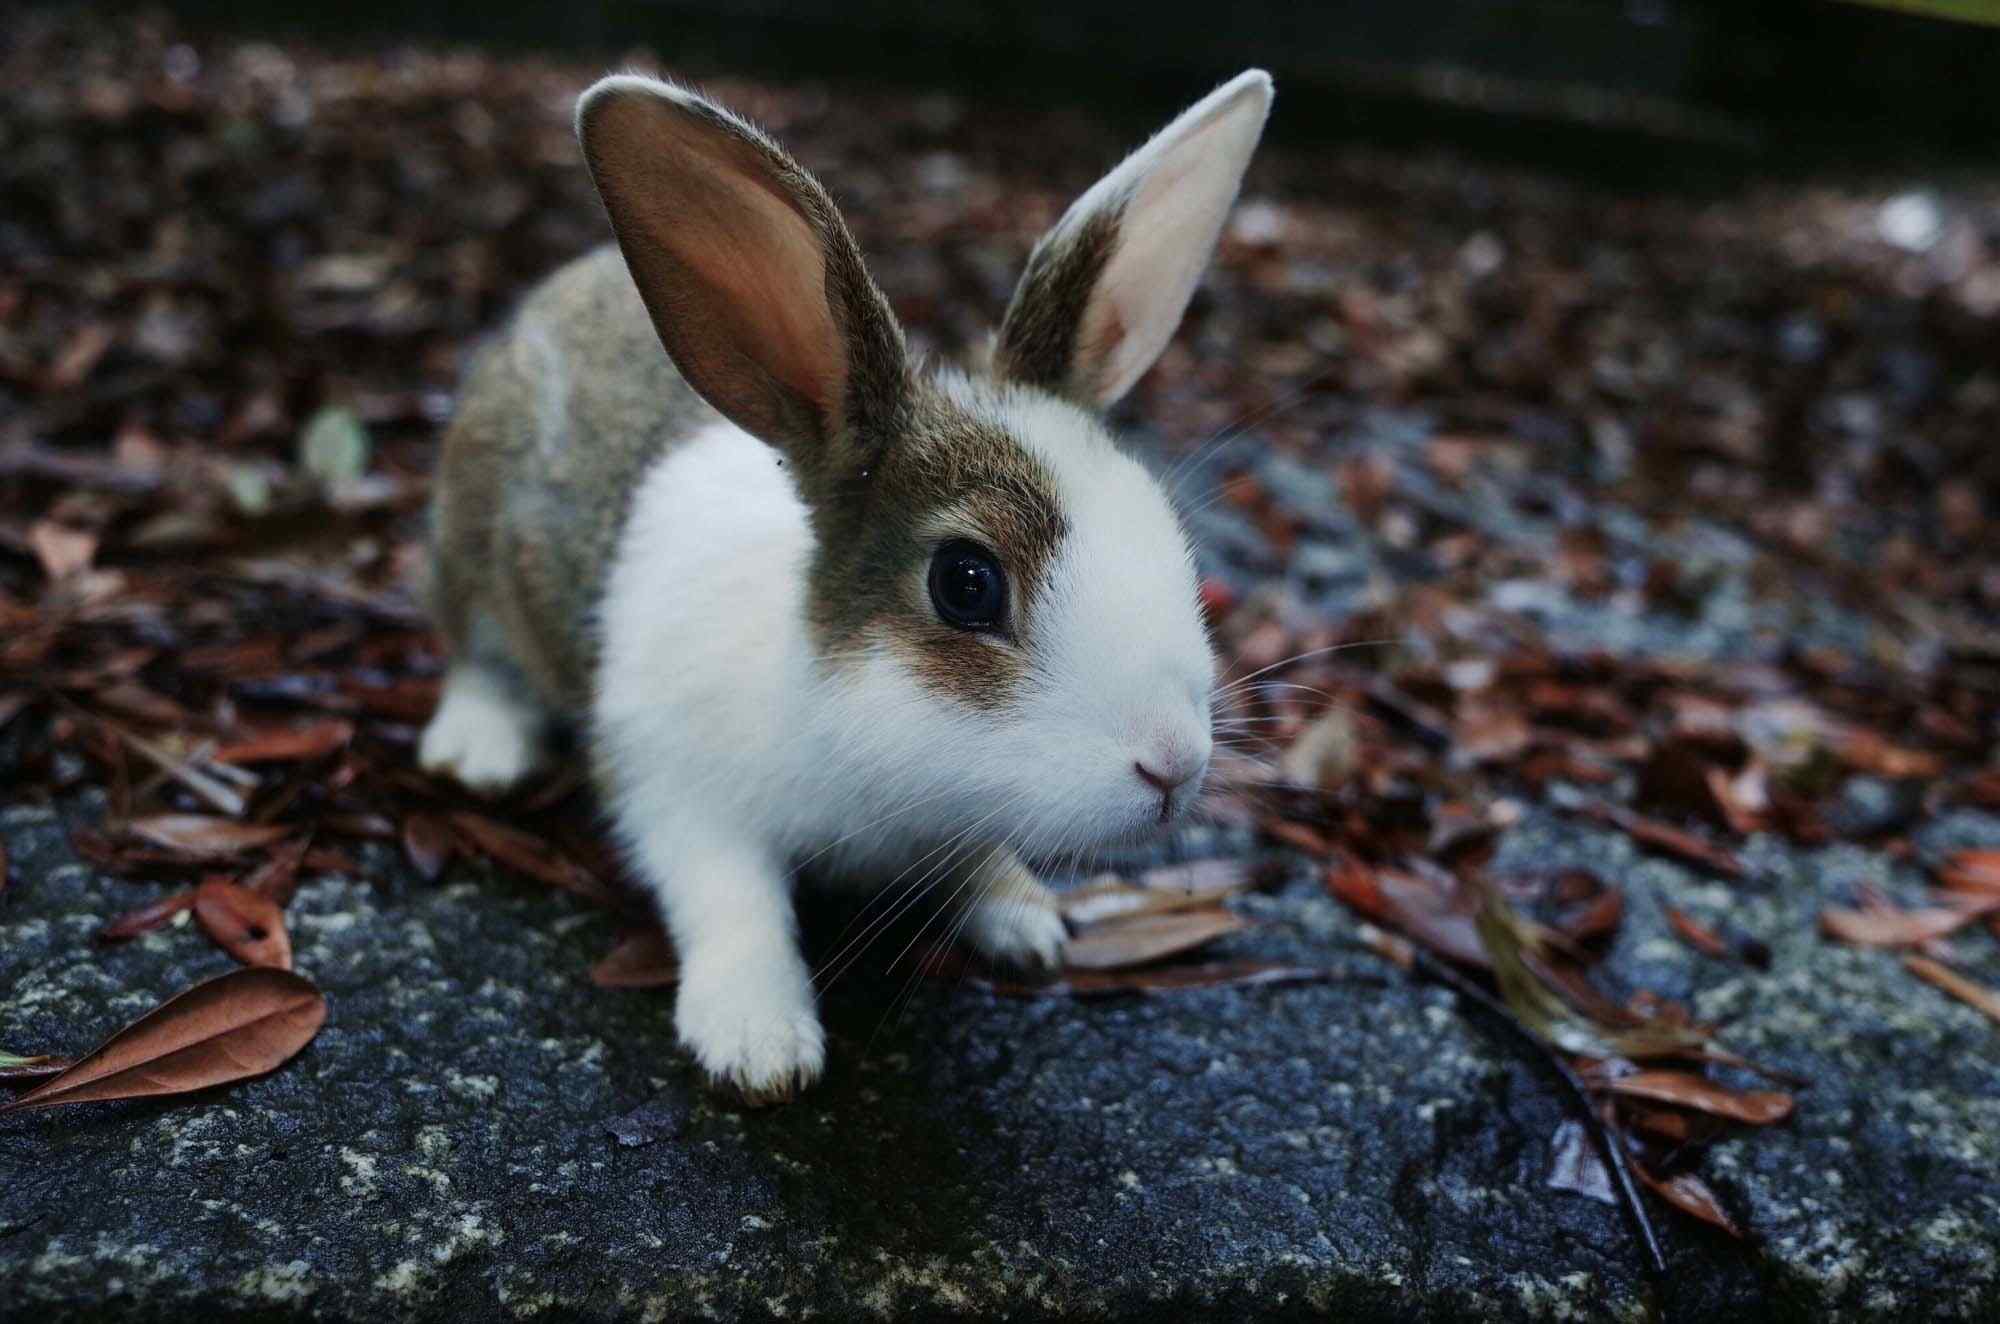 软萌可爱的小兔子桌面壁纸